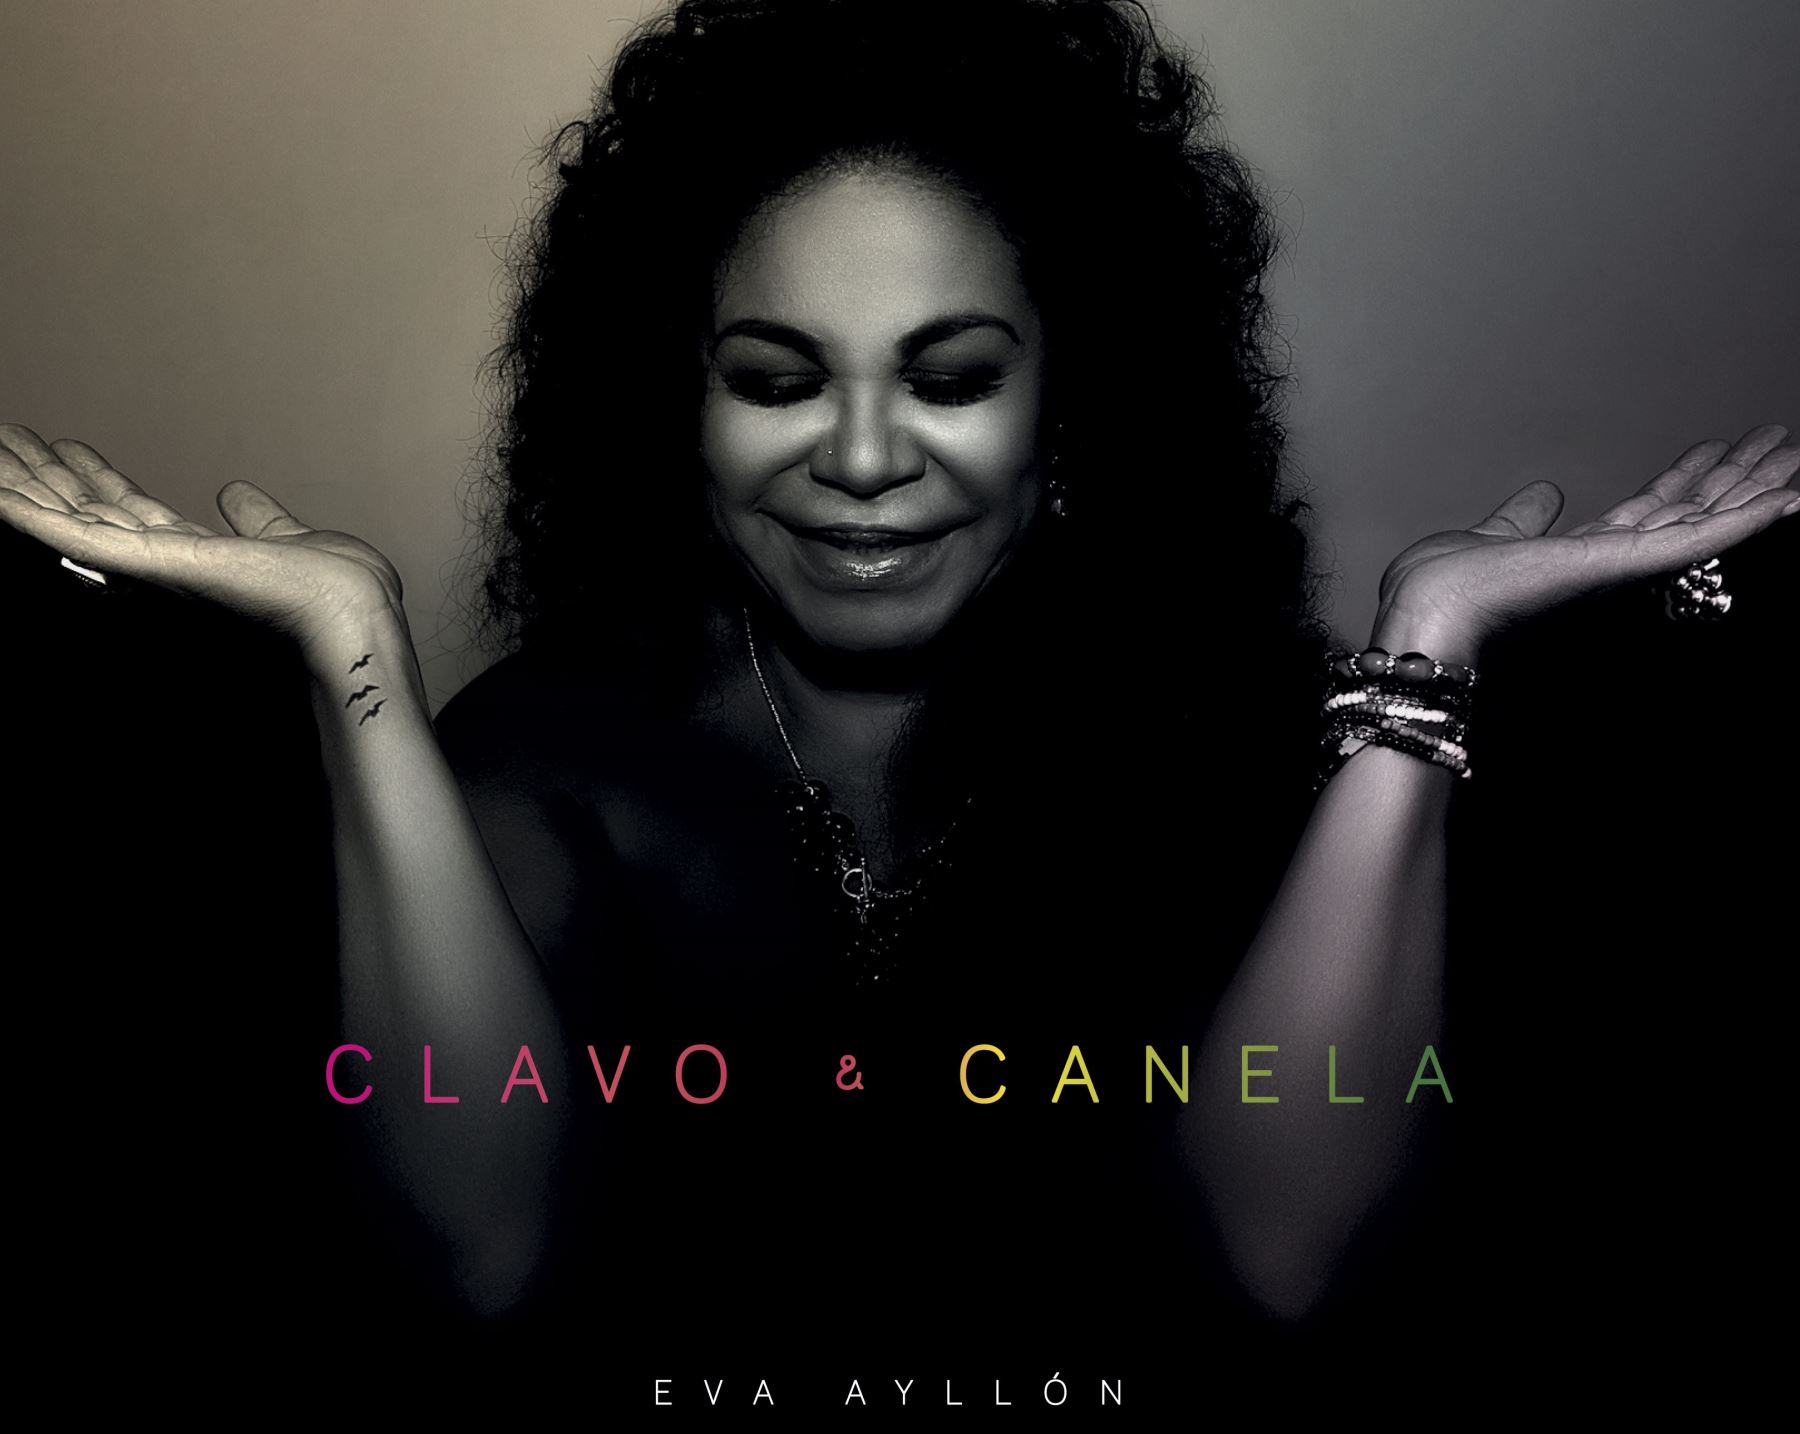 Esta es la portada de Clavo y Canela, el disco nominado al Latin Grammy de Eva Ayllón.